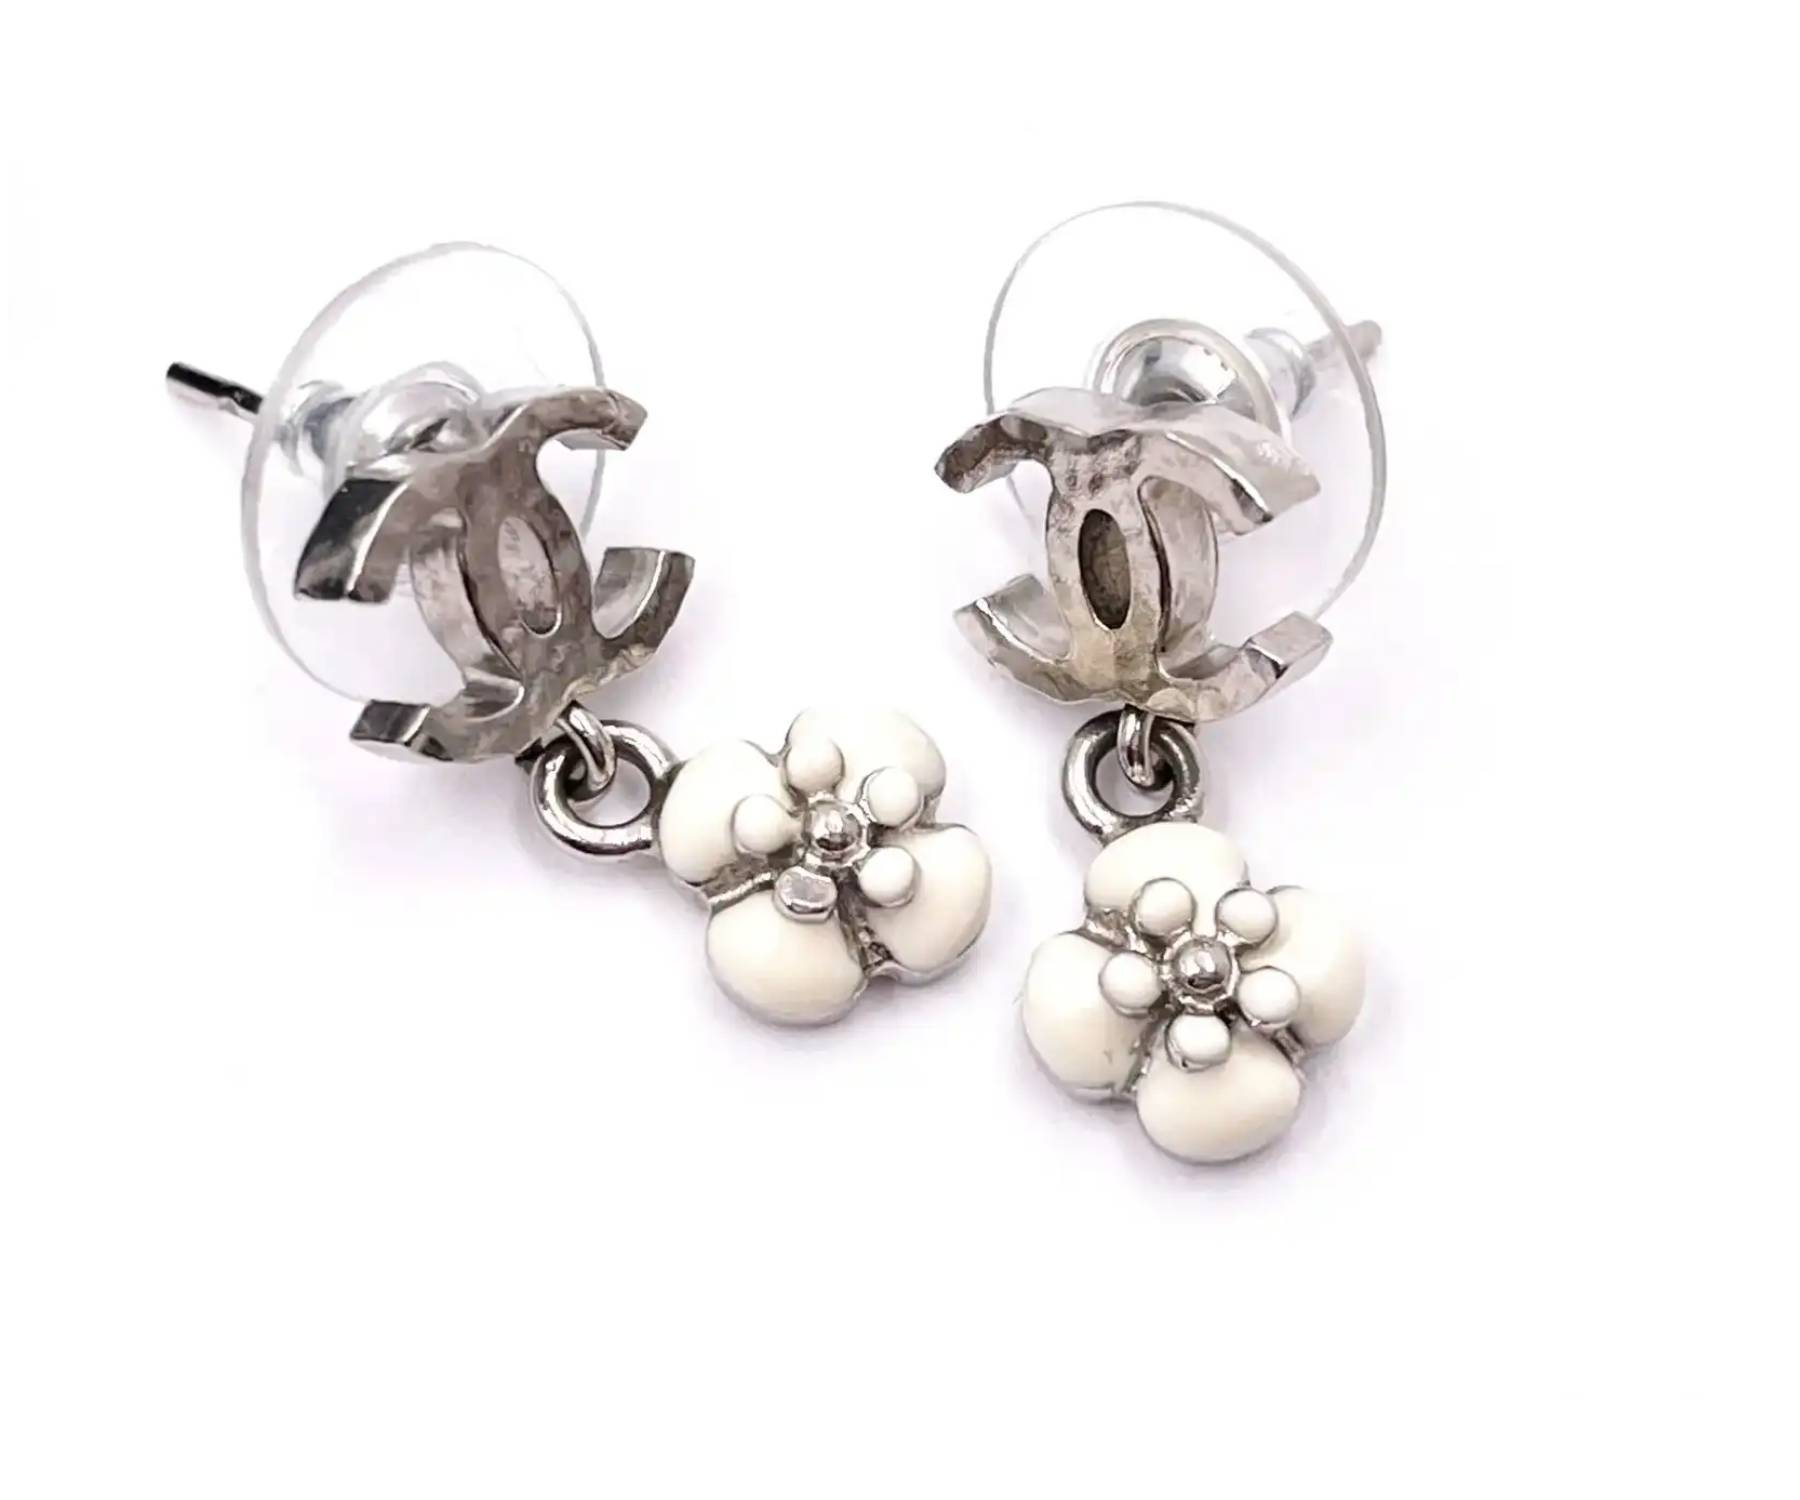 cc chanel earrings silver stud